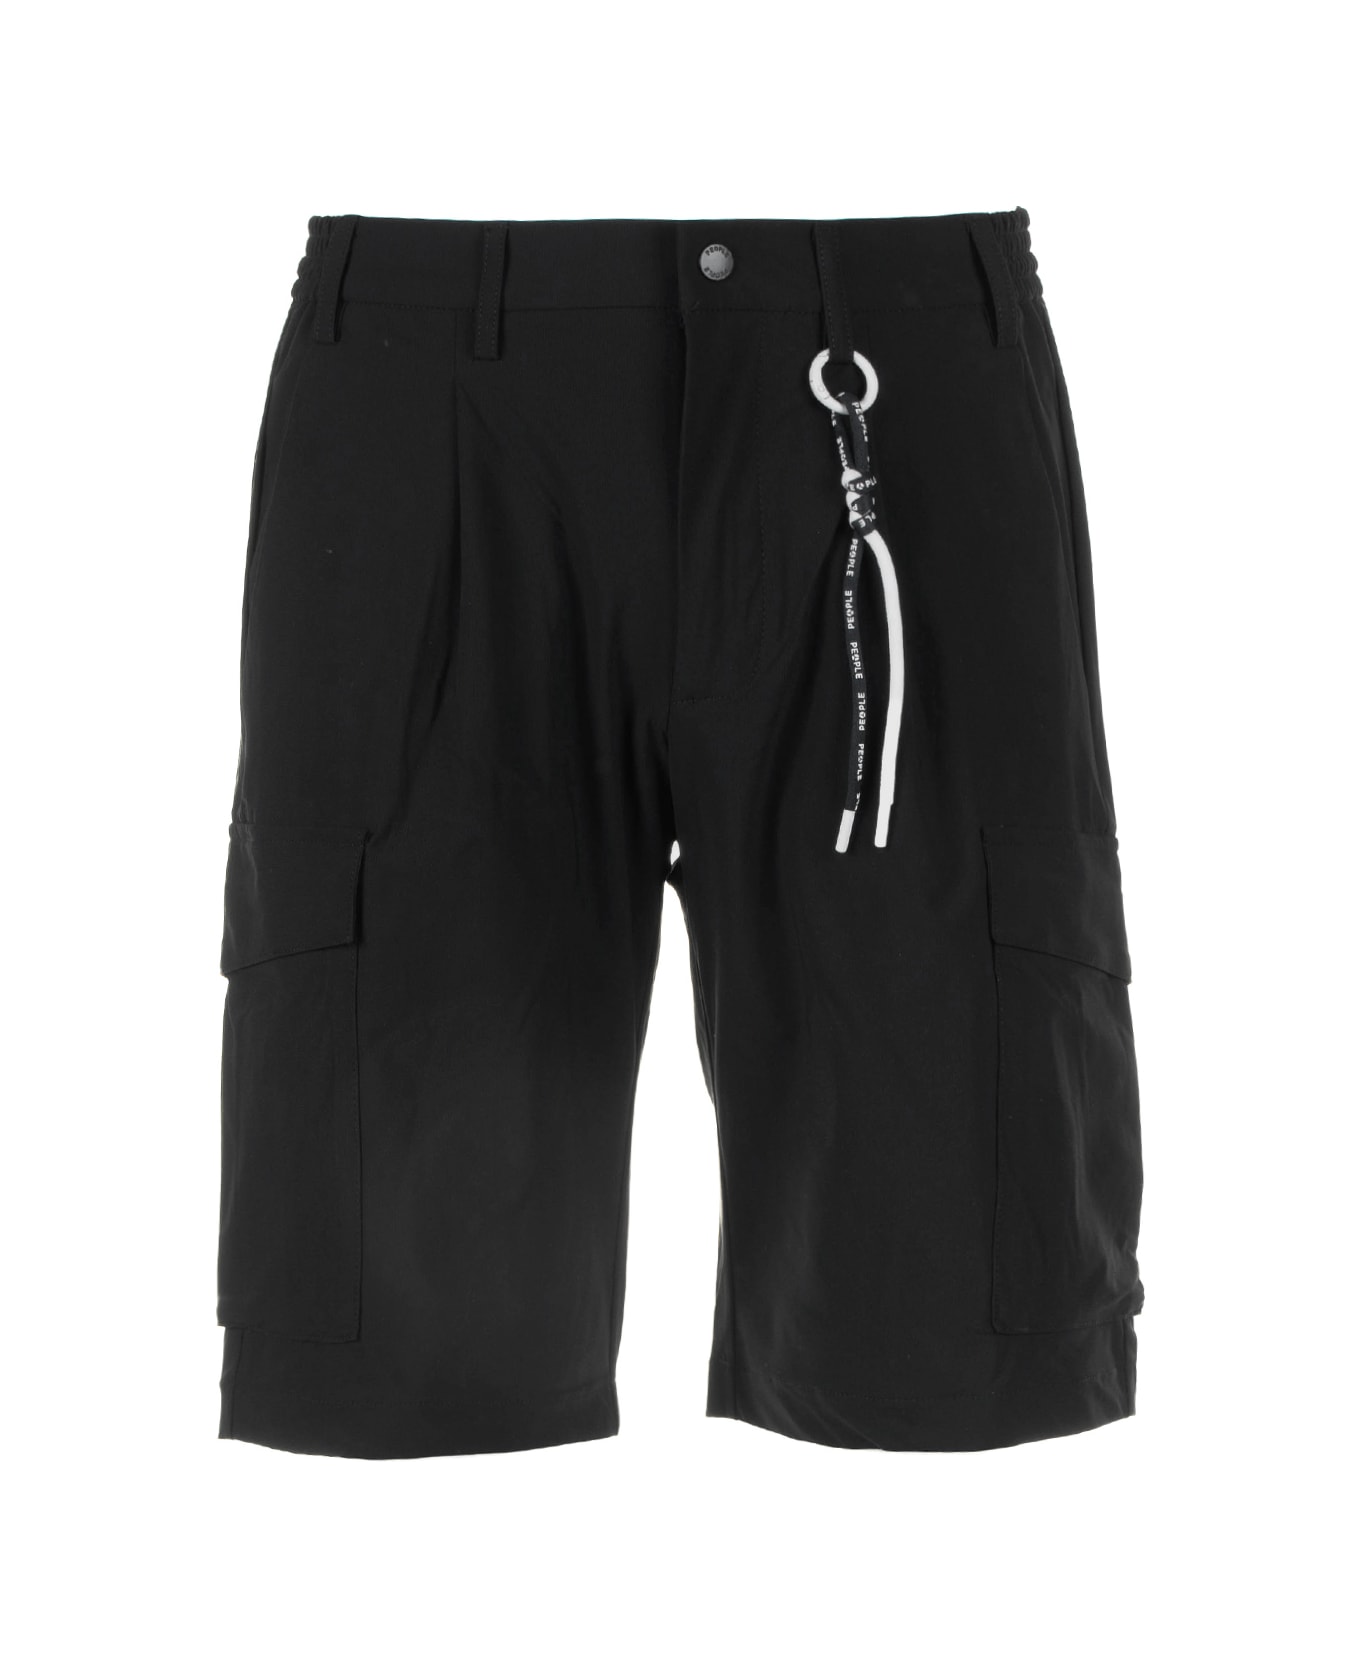 People Of Shibuya Black Men's Bermuda Shorts - NERO ショートパンツ